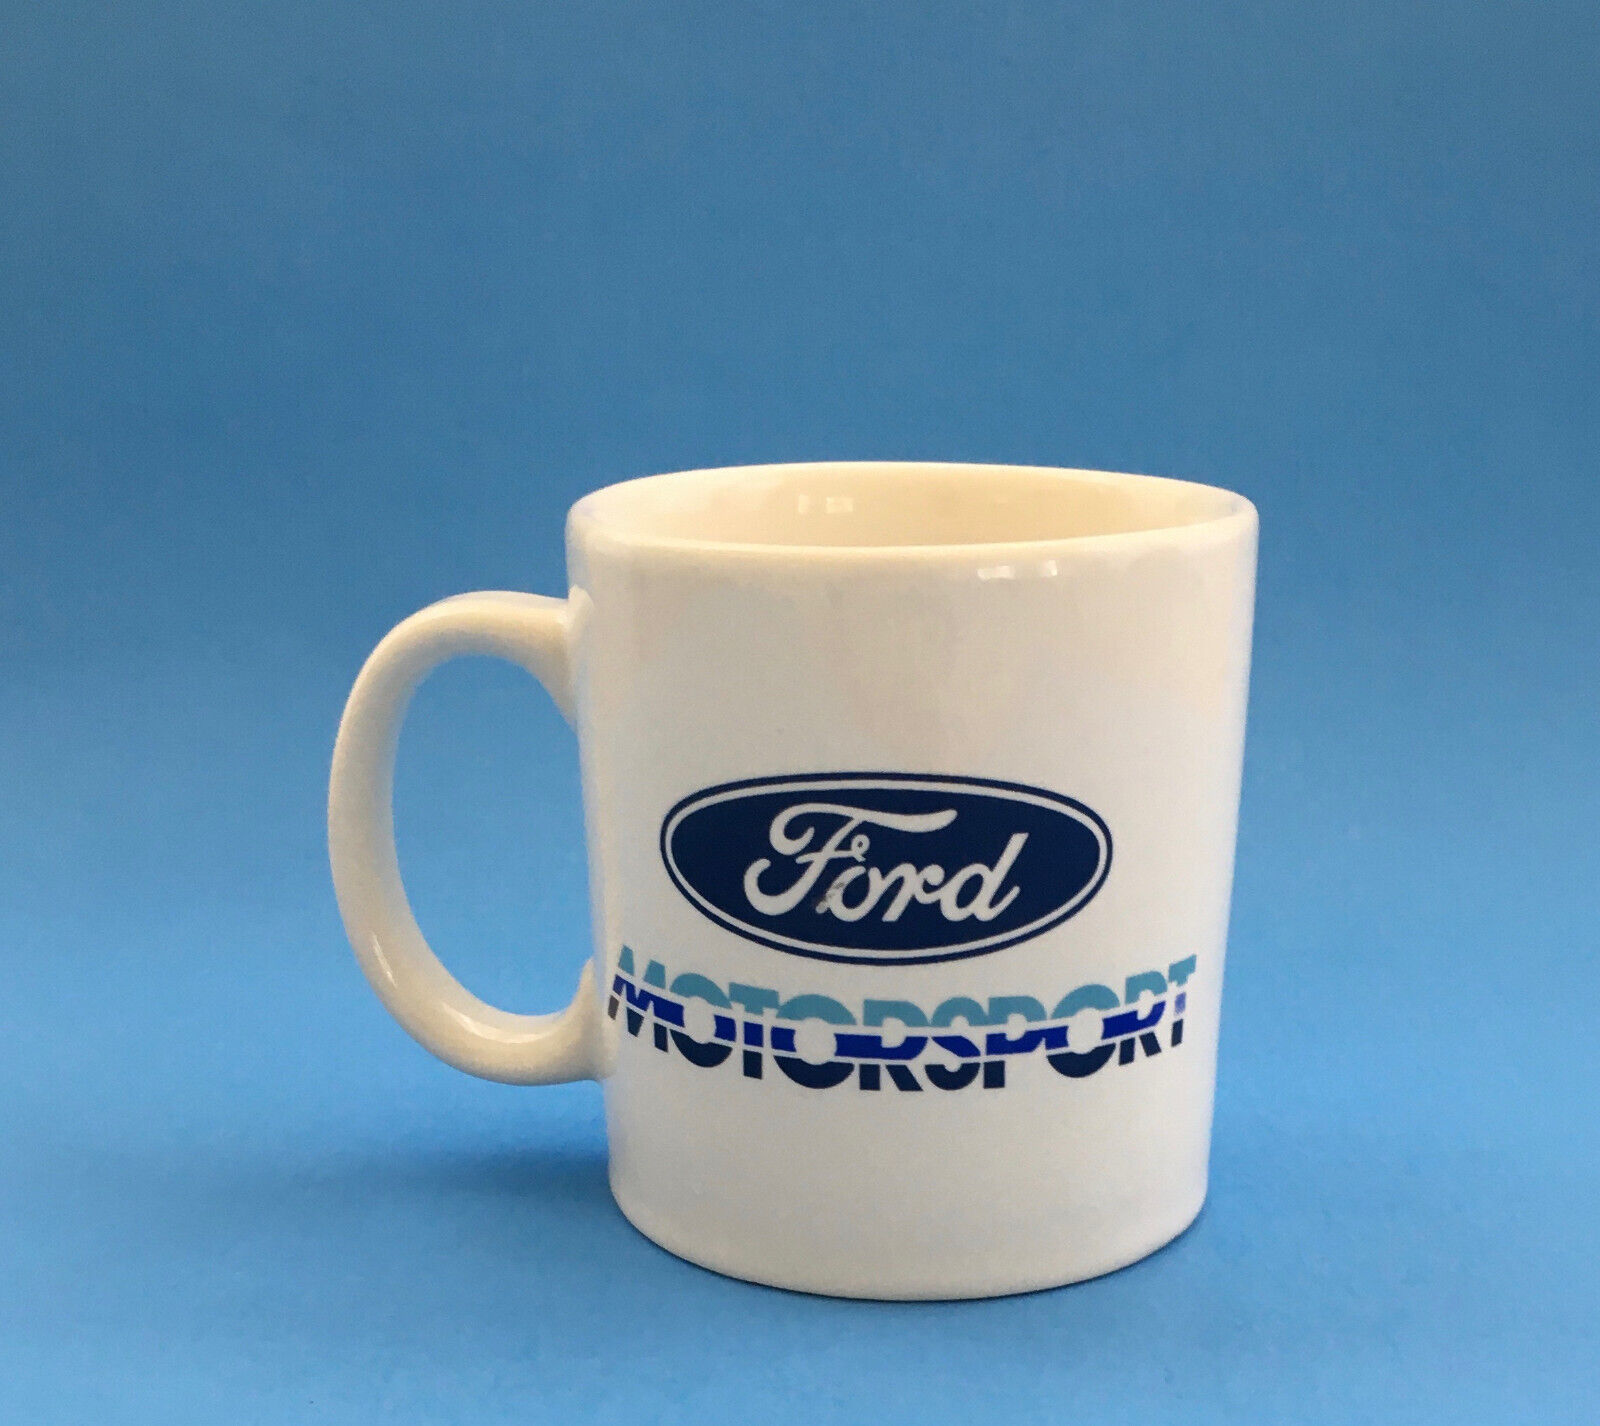 Mug Original Ford Motorsport Mustang Probe Promo Mug Advertising